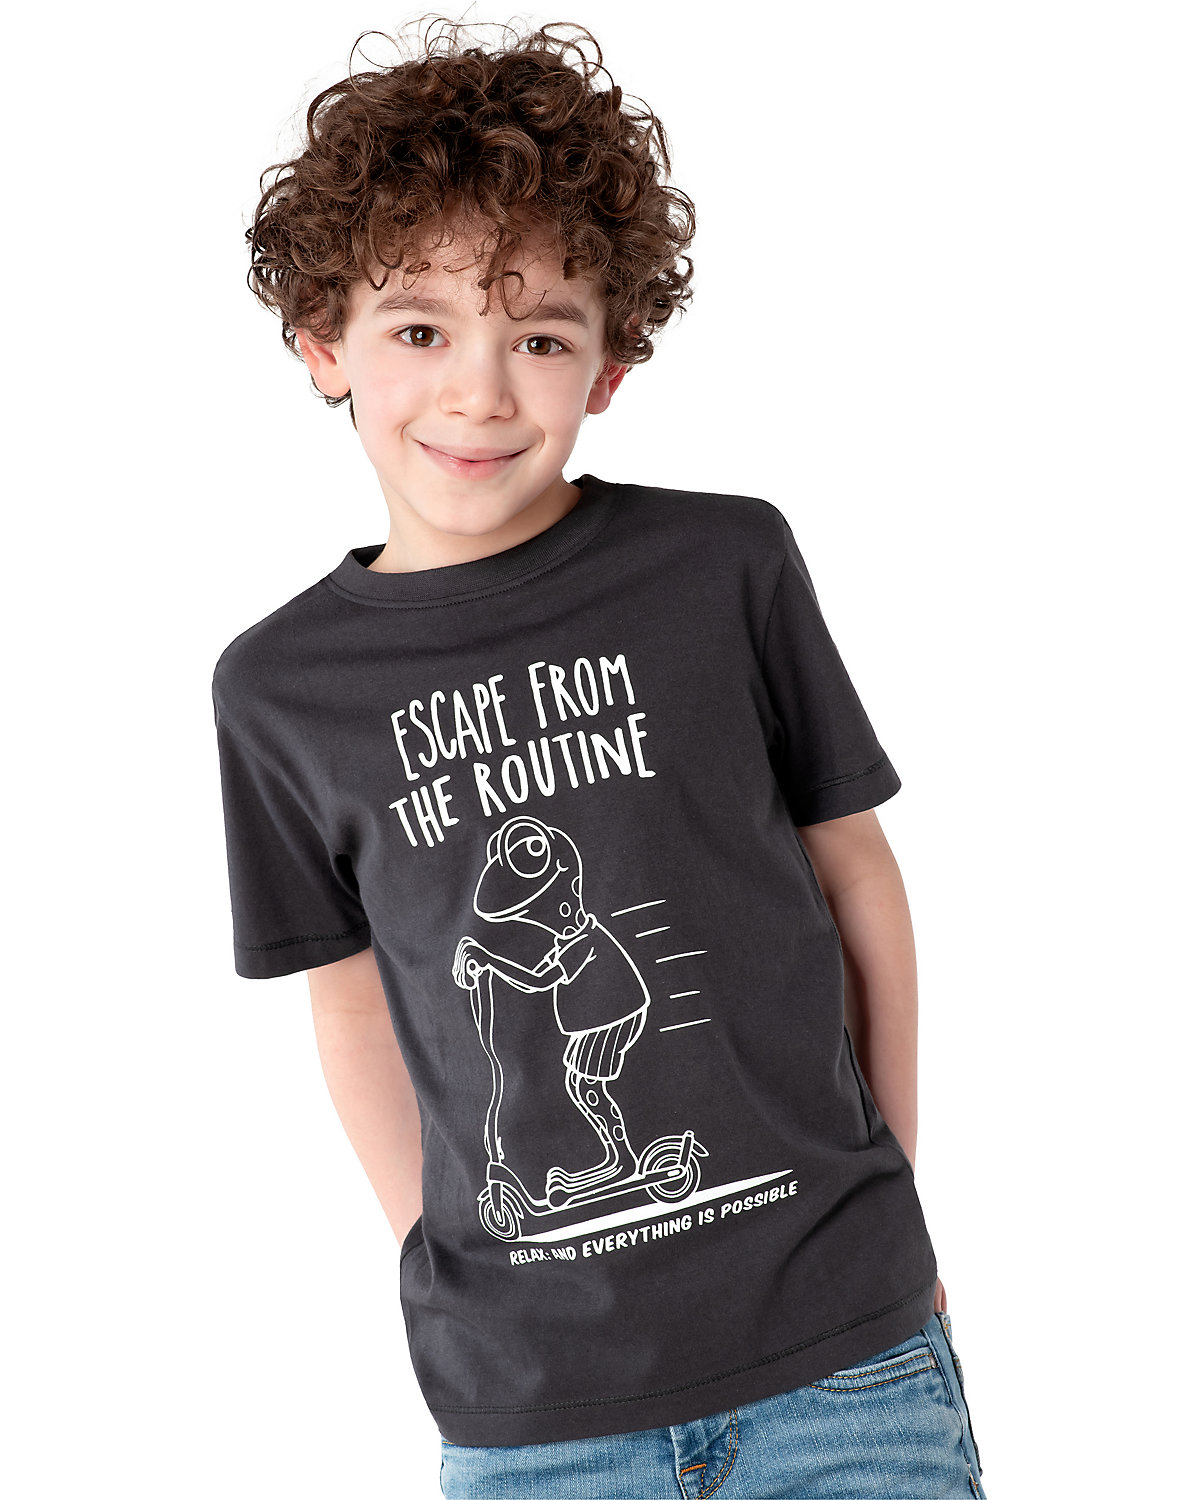 T-Shirt für Jungen von ZAB kids